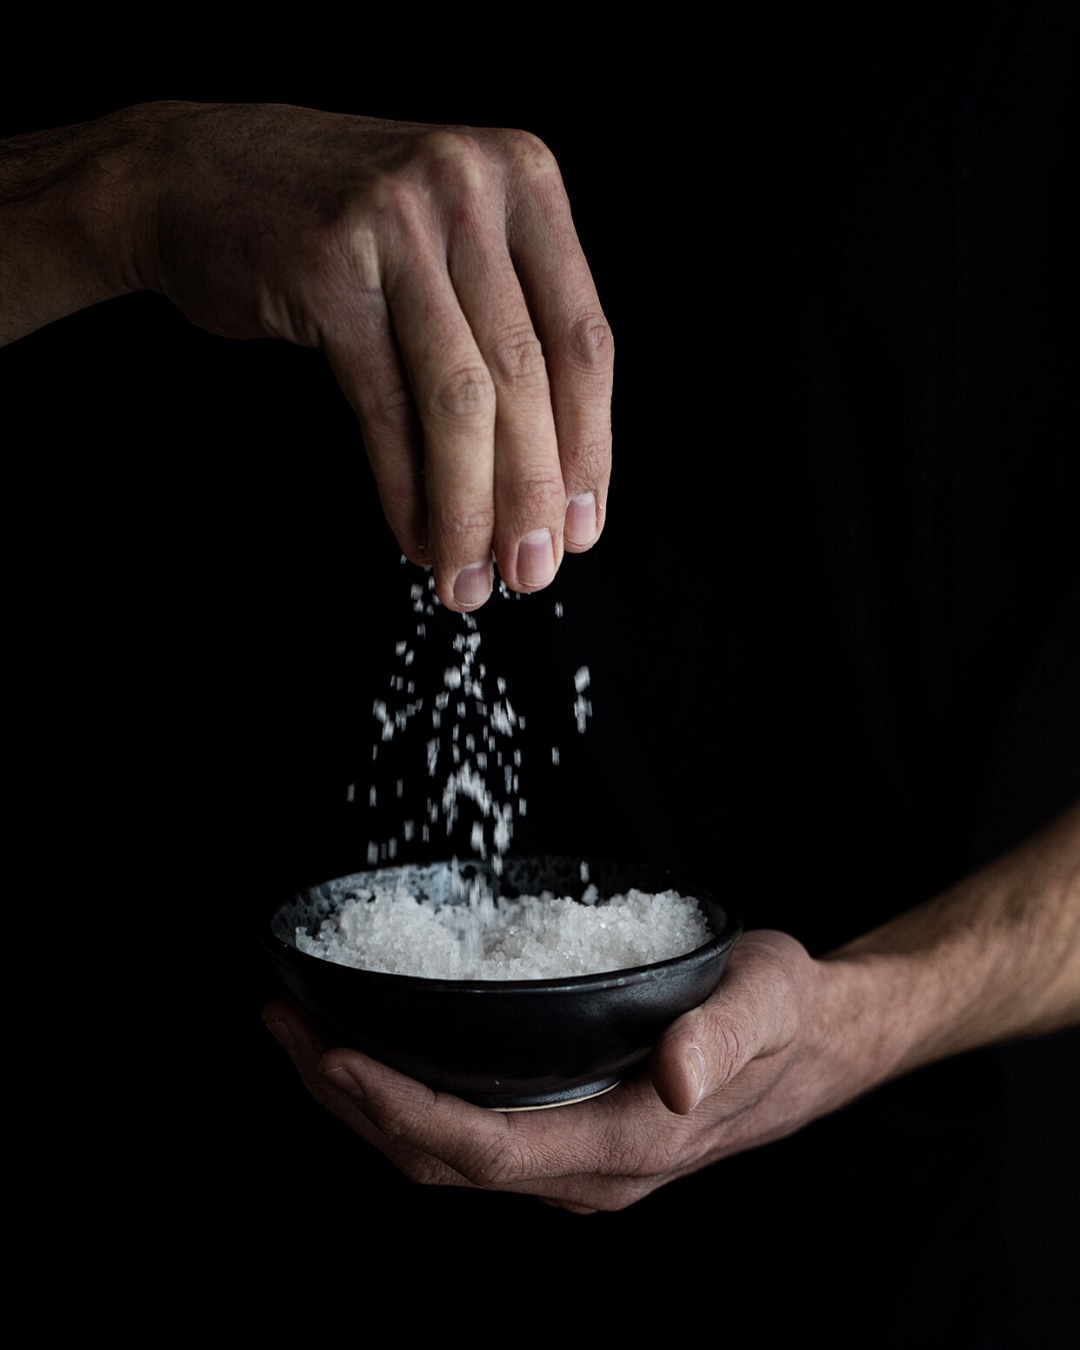 Hand sprinkling salt into a bowl